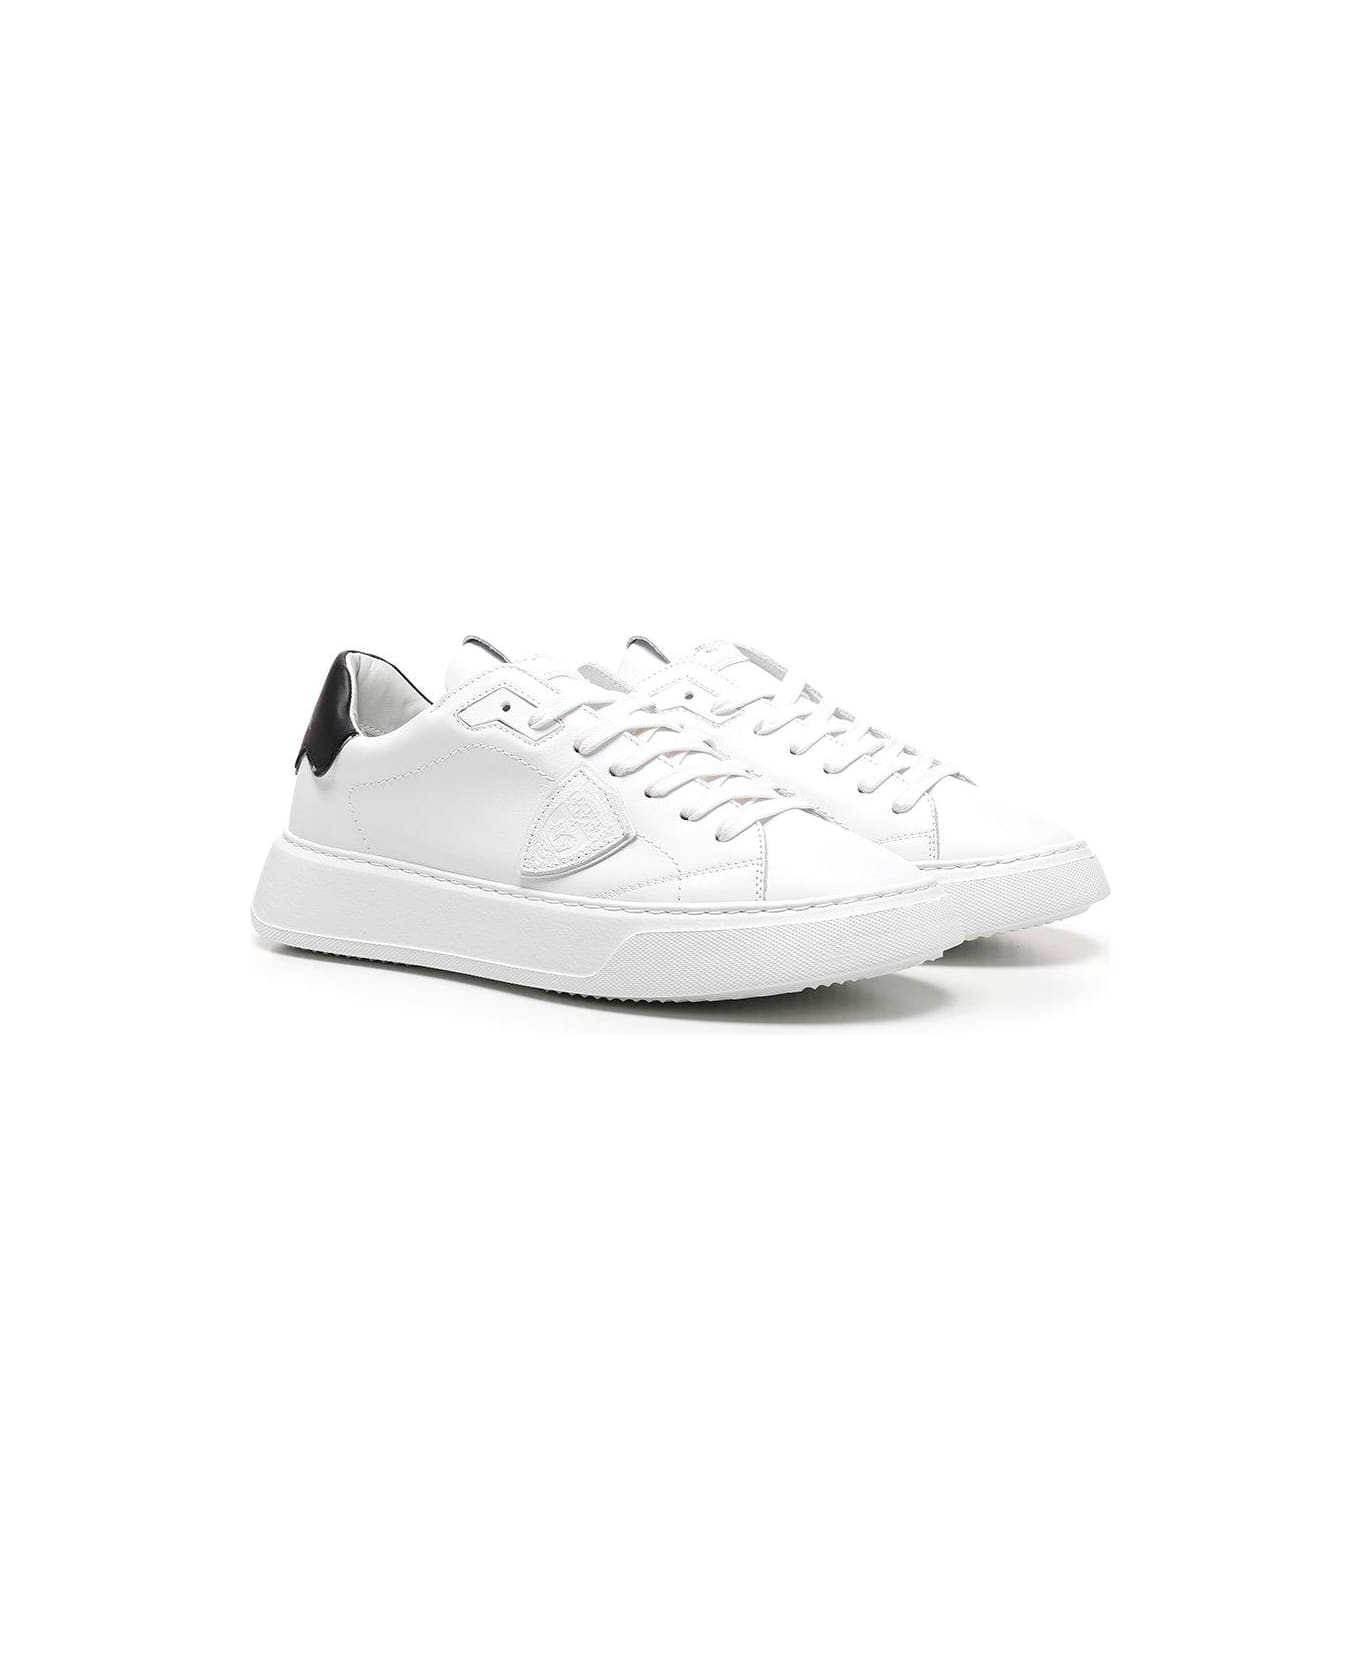 Philippe Model Temple Veau Sneakers - Bianco e Nero スニーカー